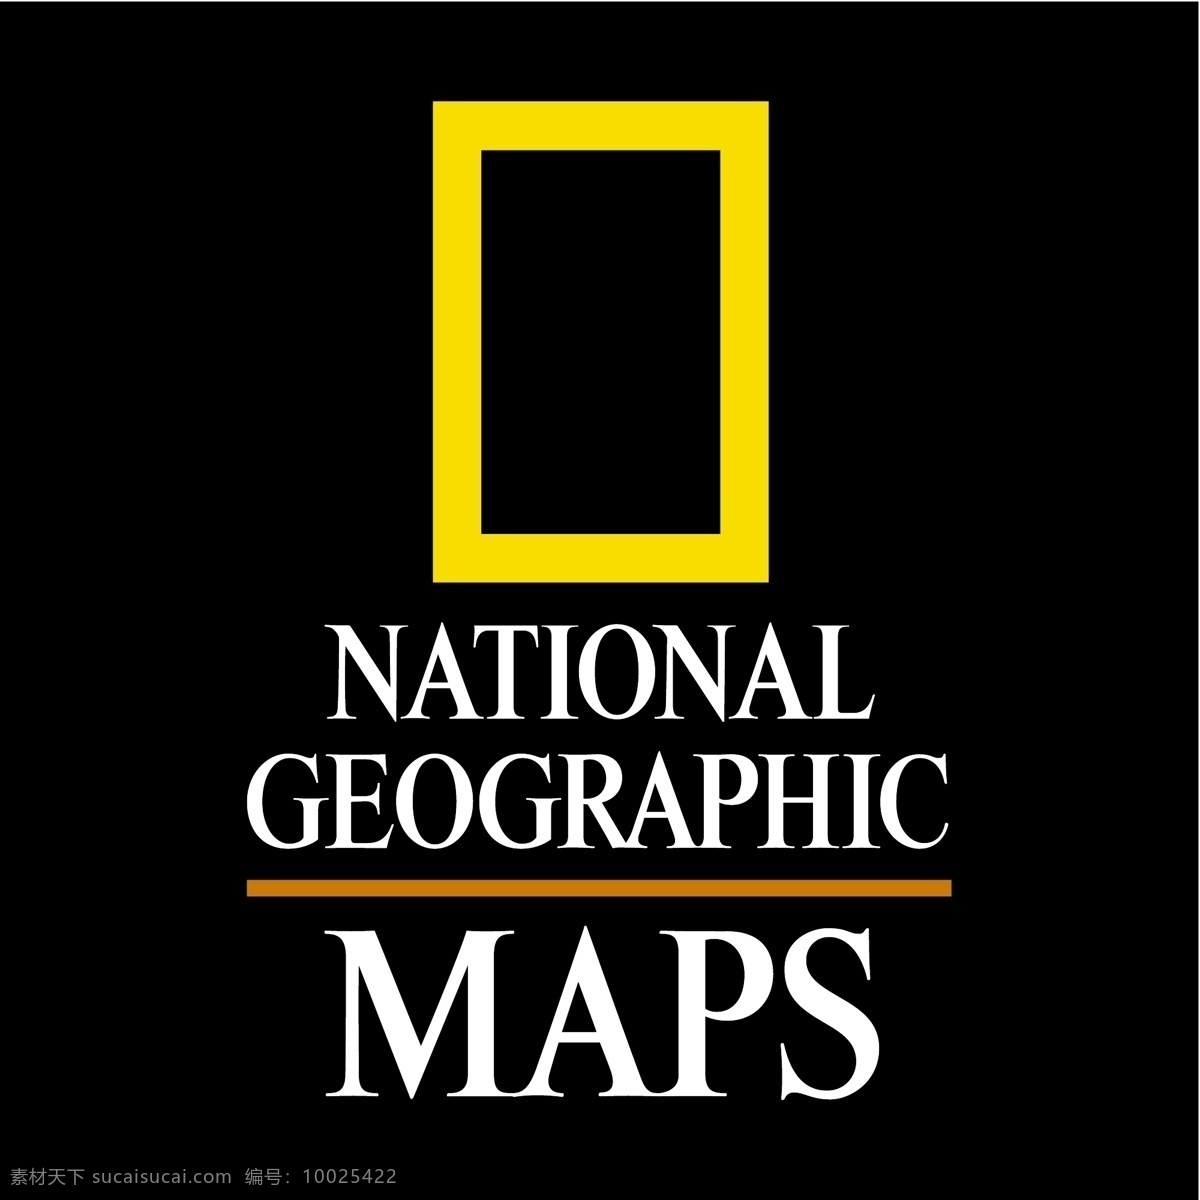 地理 地图 国家 矢量标志 美国 国家地理 杂志 地理地图 矢量 向量 自由 标志 领土 矢量图 建筑家居